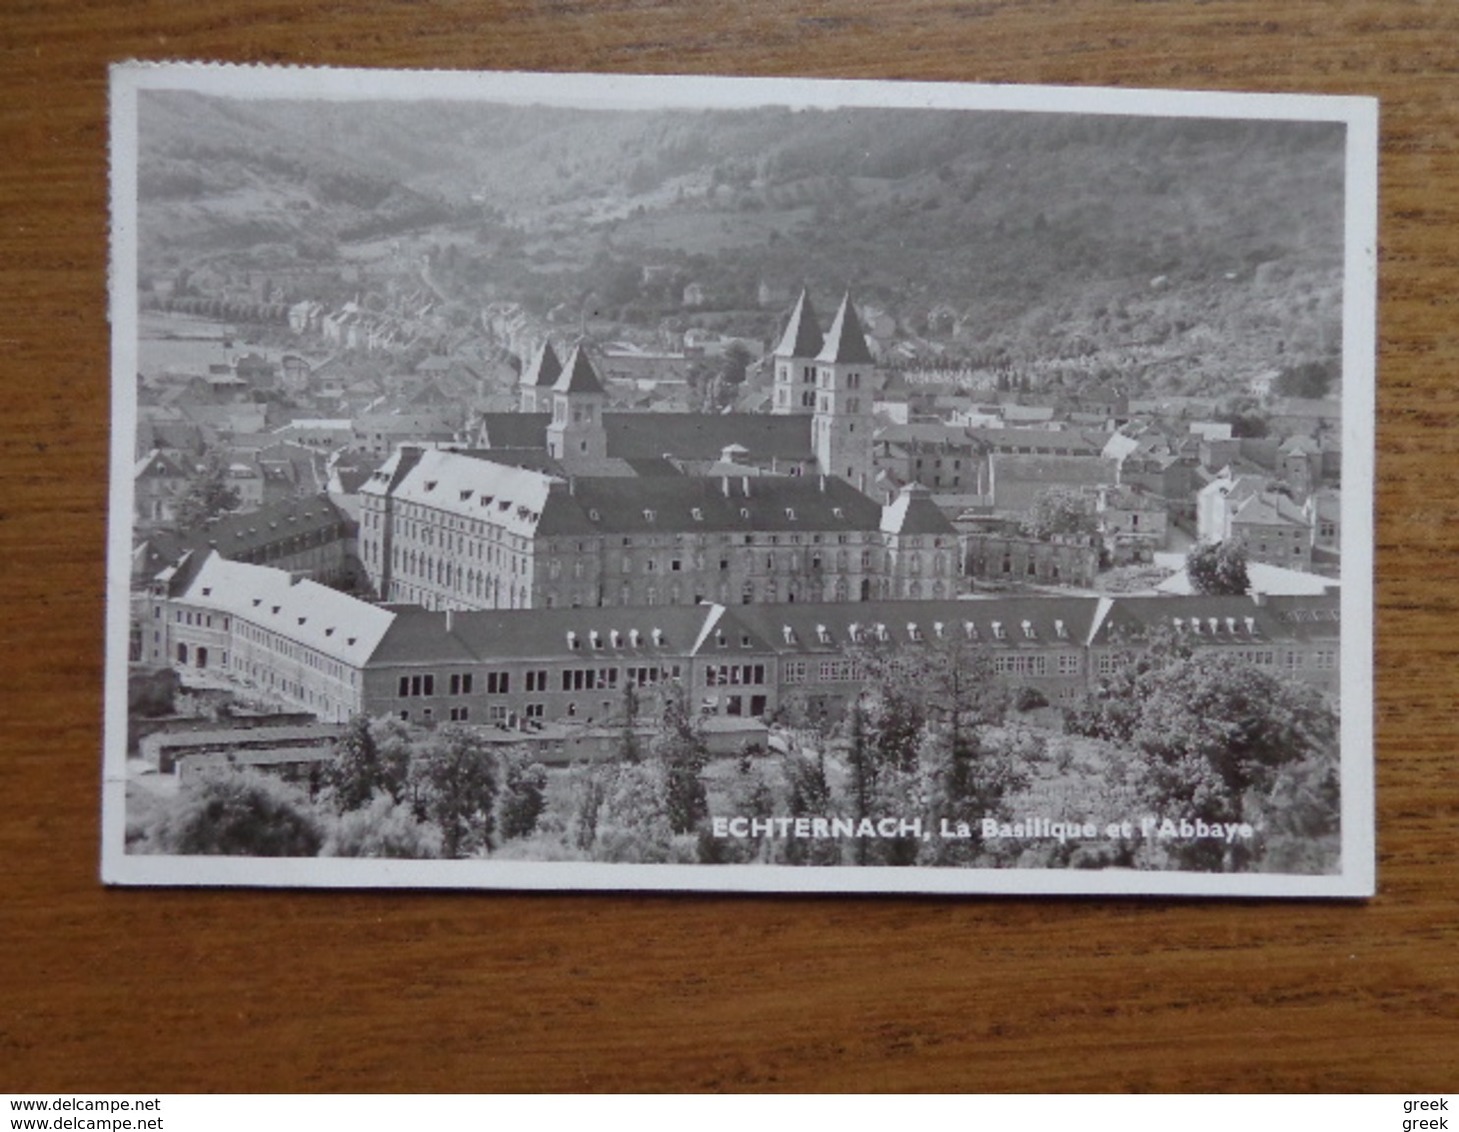 78 cartes de Grand Duché de Luxembourg et ses environs (voir les photo's)